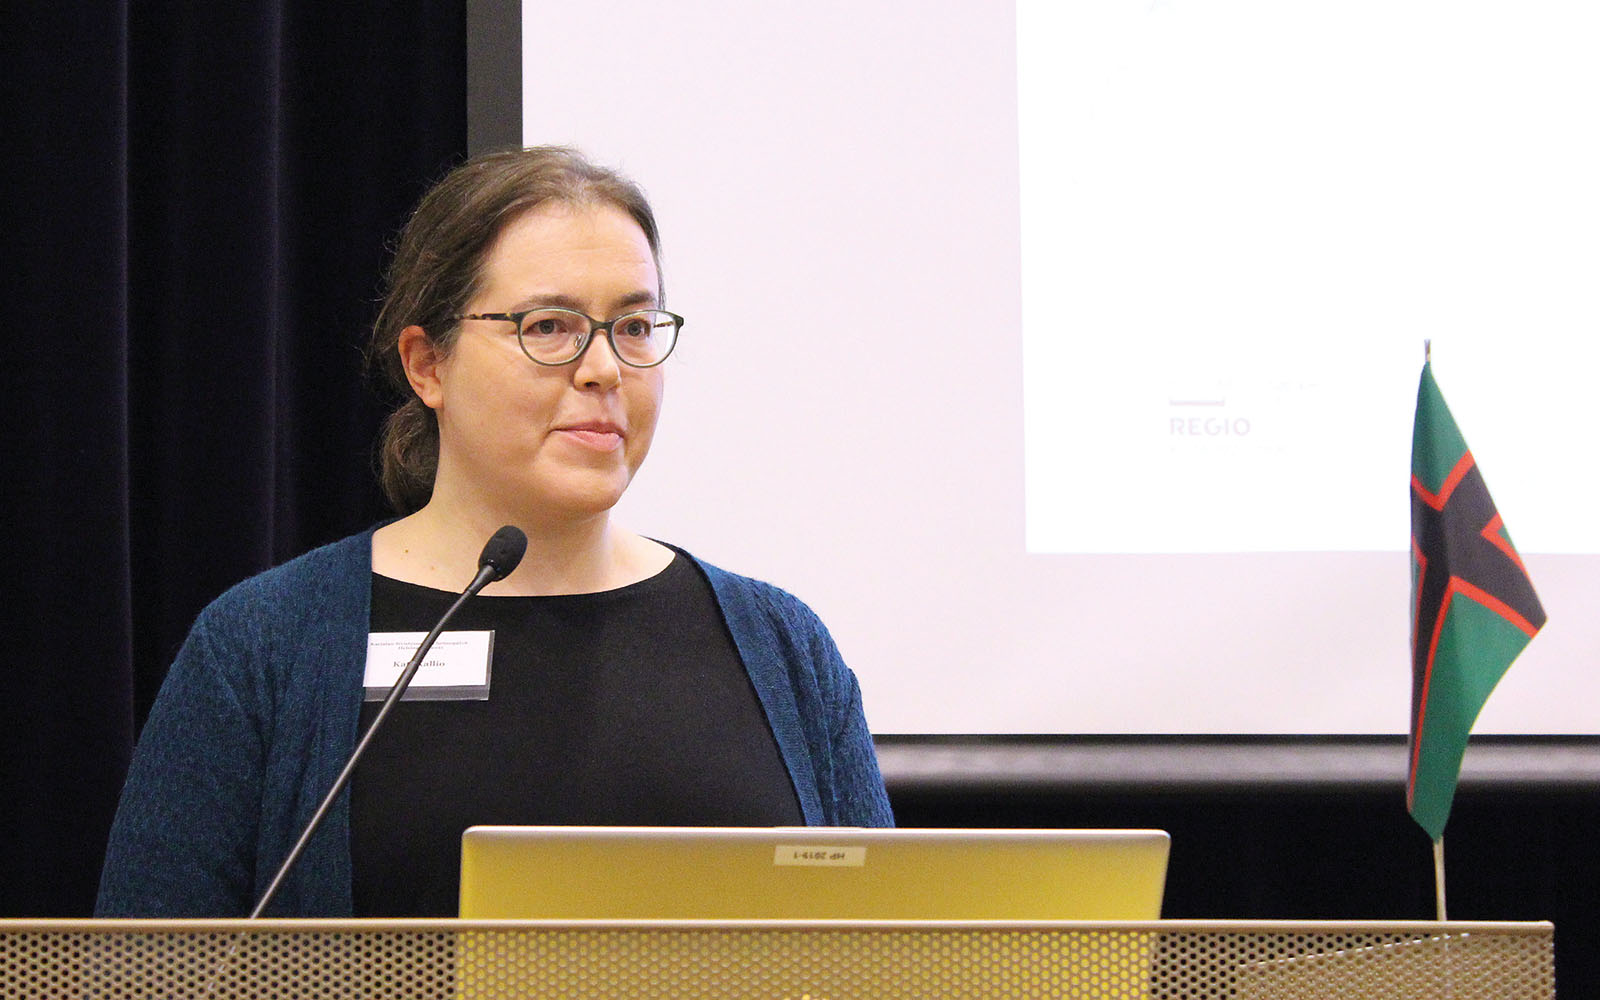 Kati Kallio kertoi puheenvuorossaan tietojenkäsittelytieteen keinoista.